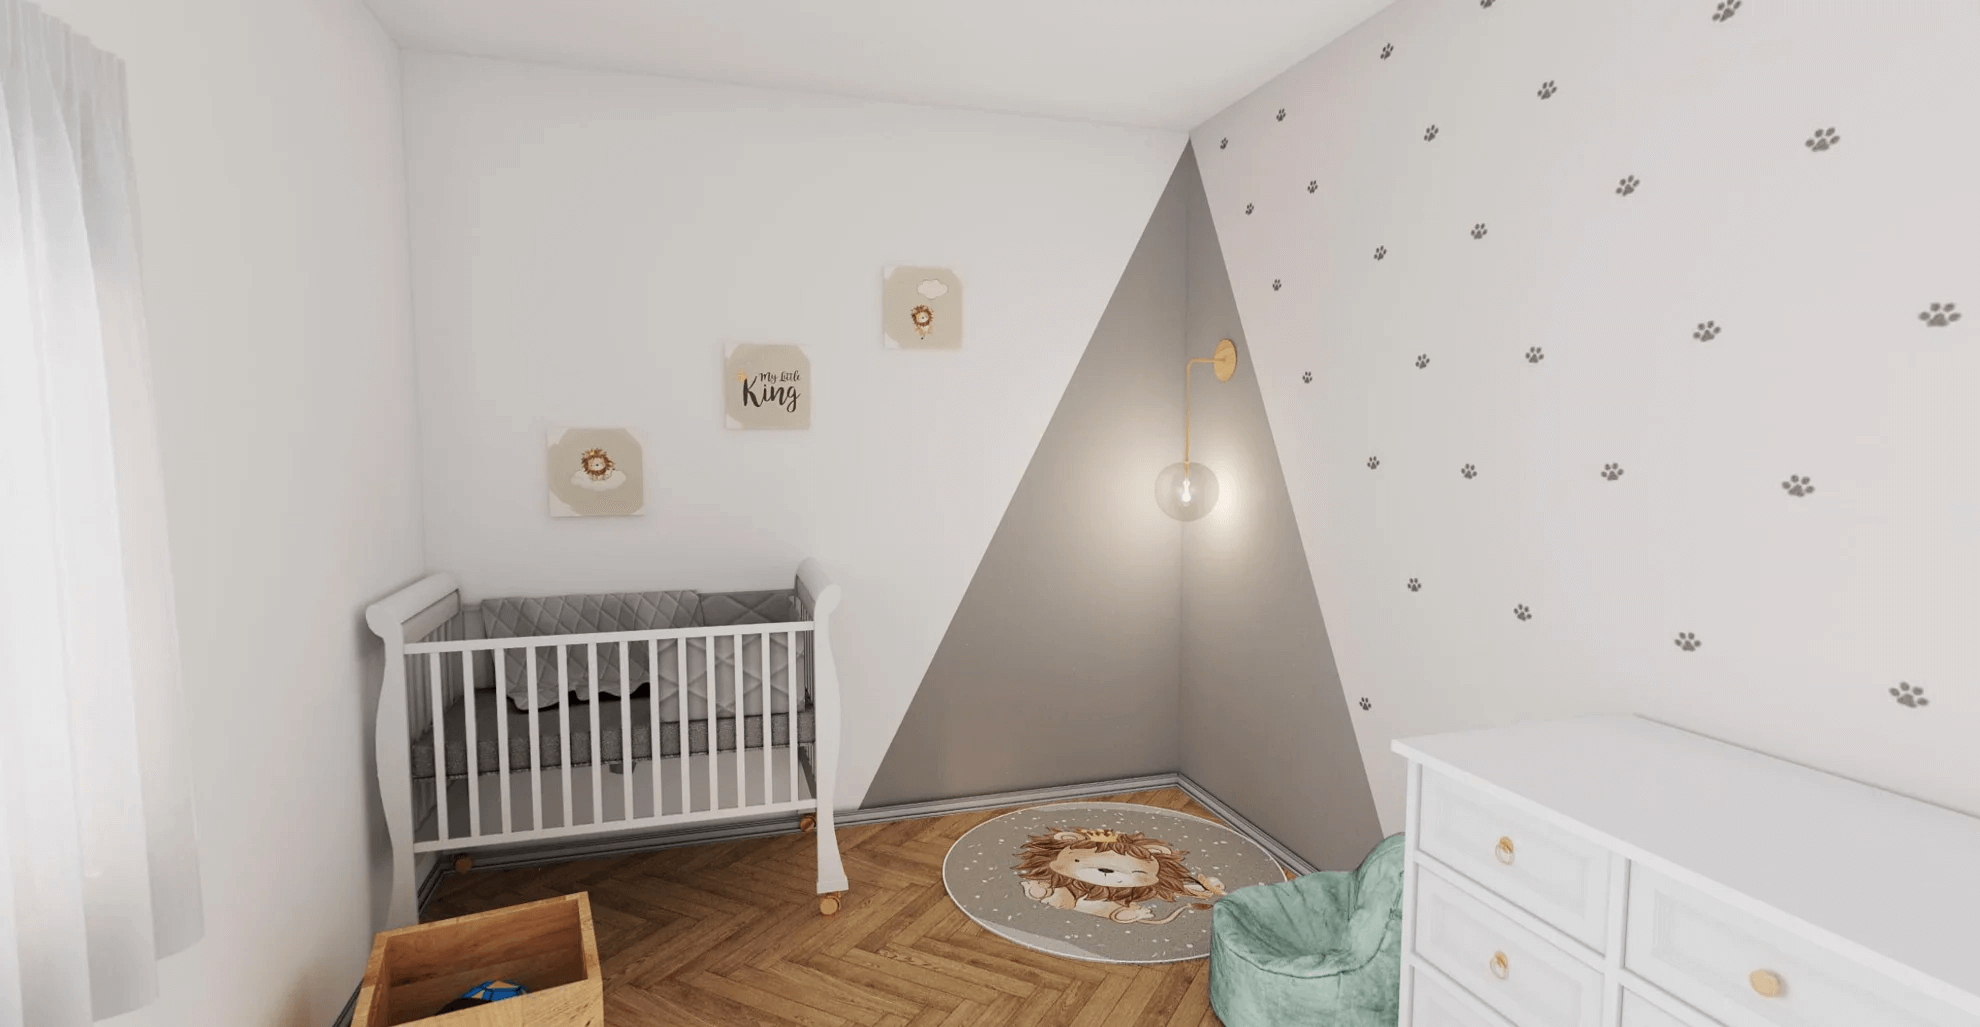 החדר האינטימי שלי – איך יוצרים חדר מרגיע ומיוחד לילדים צעירים